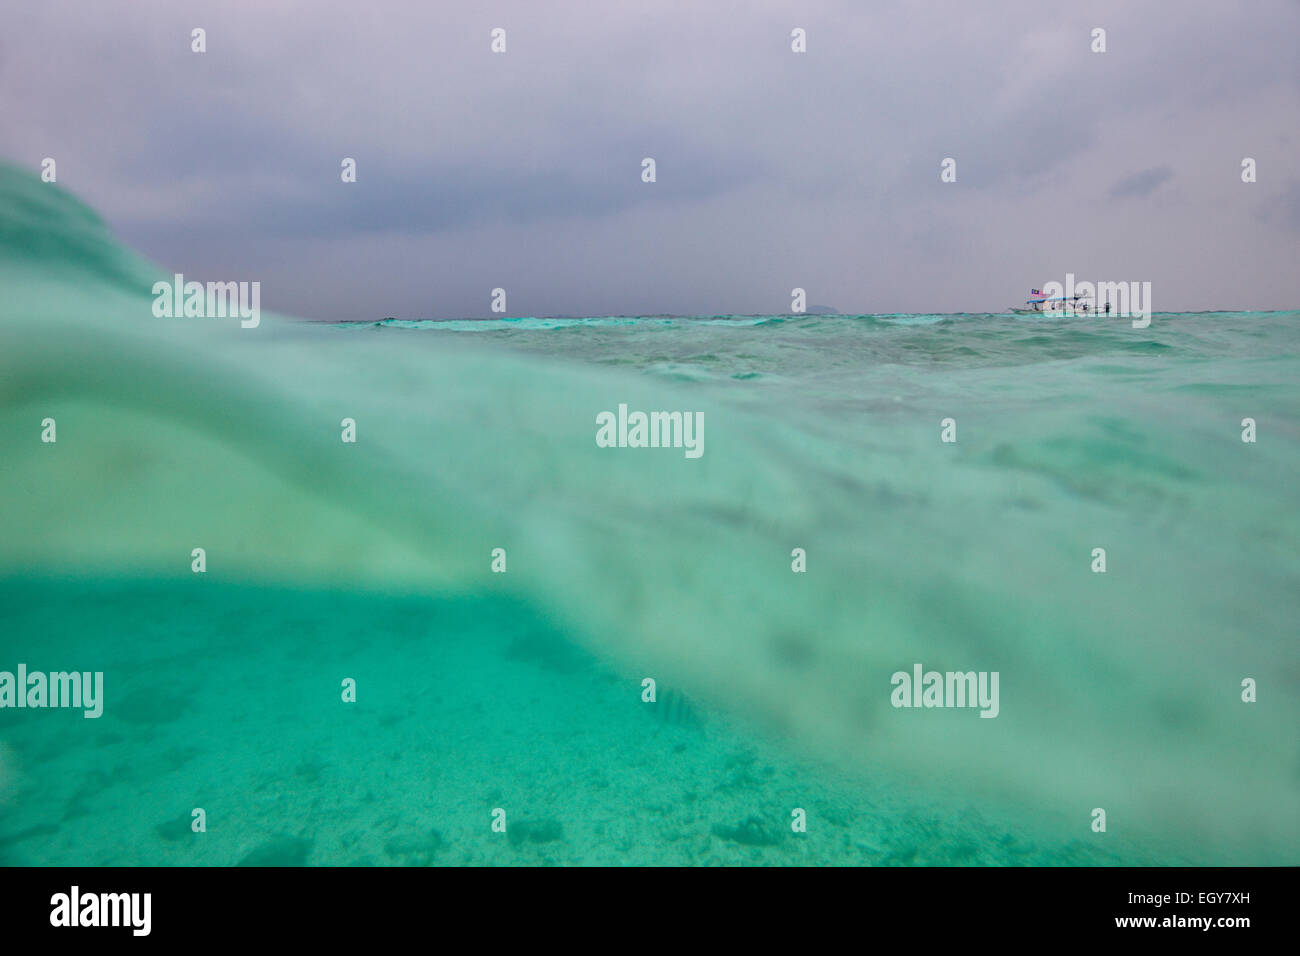 Malasia, el Mar de China Meridional, la superficie de agua Foto de stock